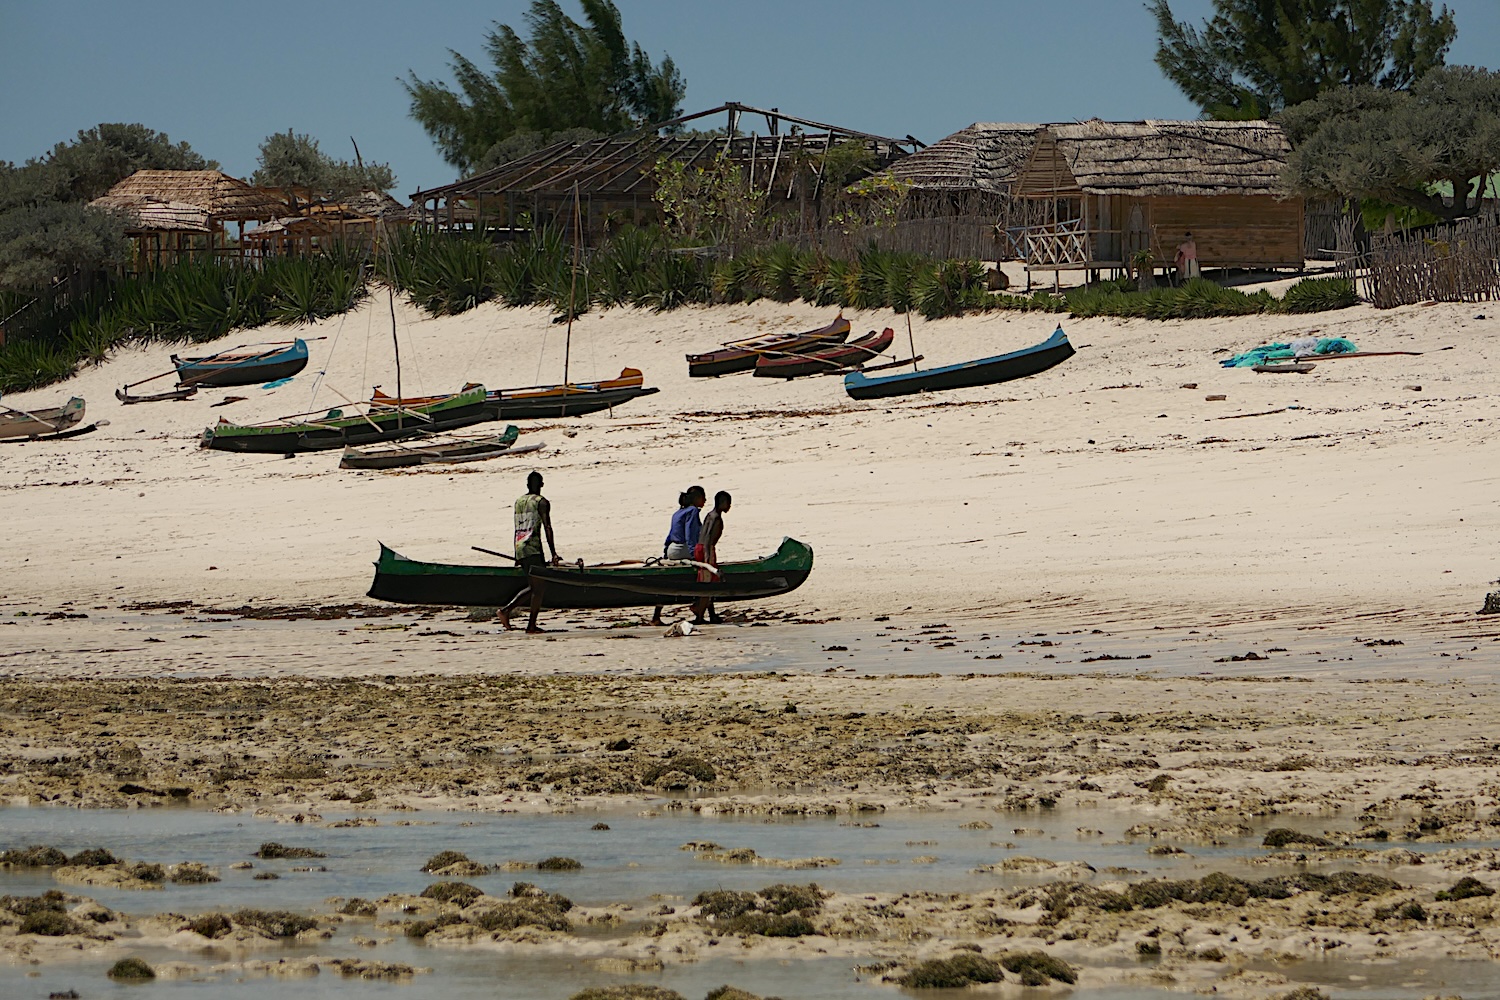 Des pêcheurs rentrent de la pêche et montent leur pirogue sur la plage © Globe Reporters